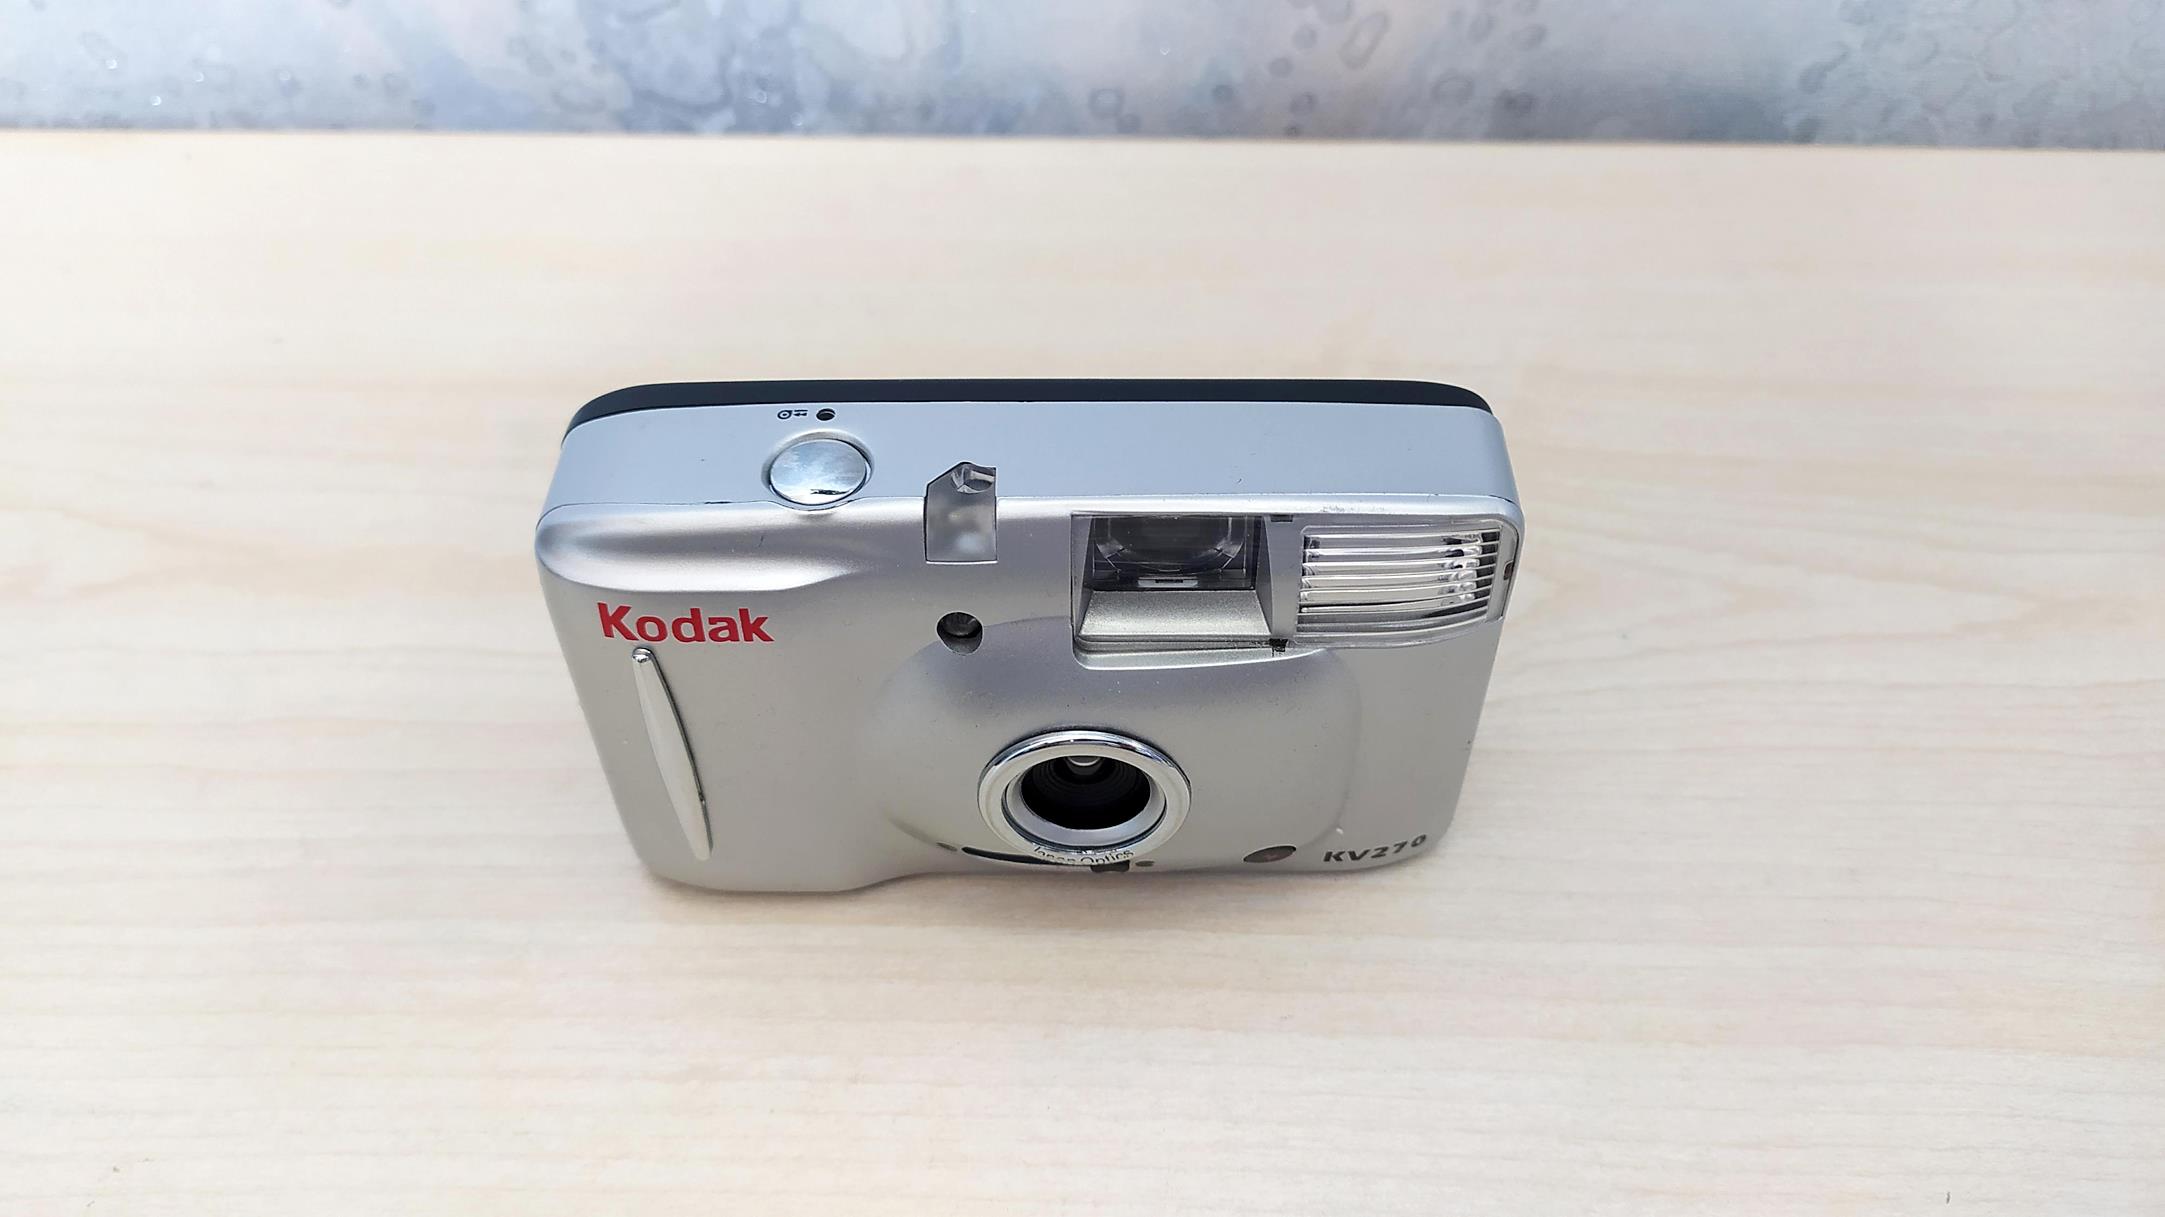 دوربین عکاسی قدیمی کداک Kodak KV270